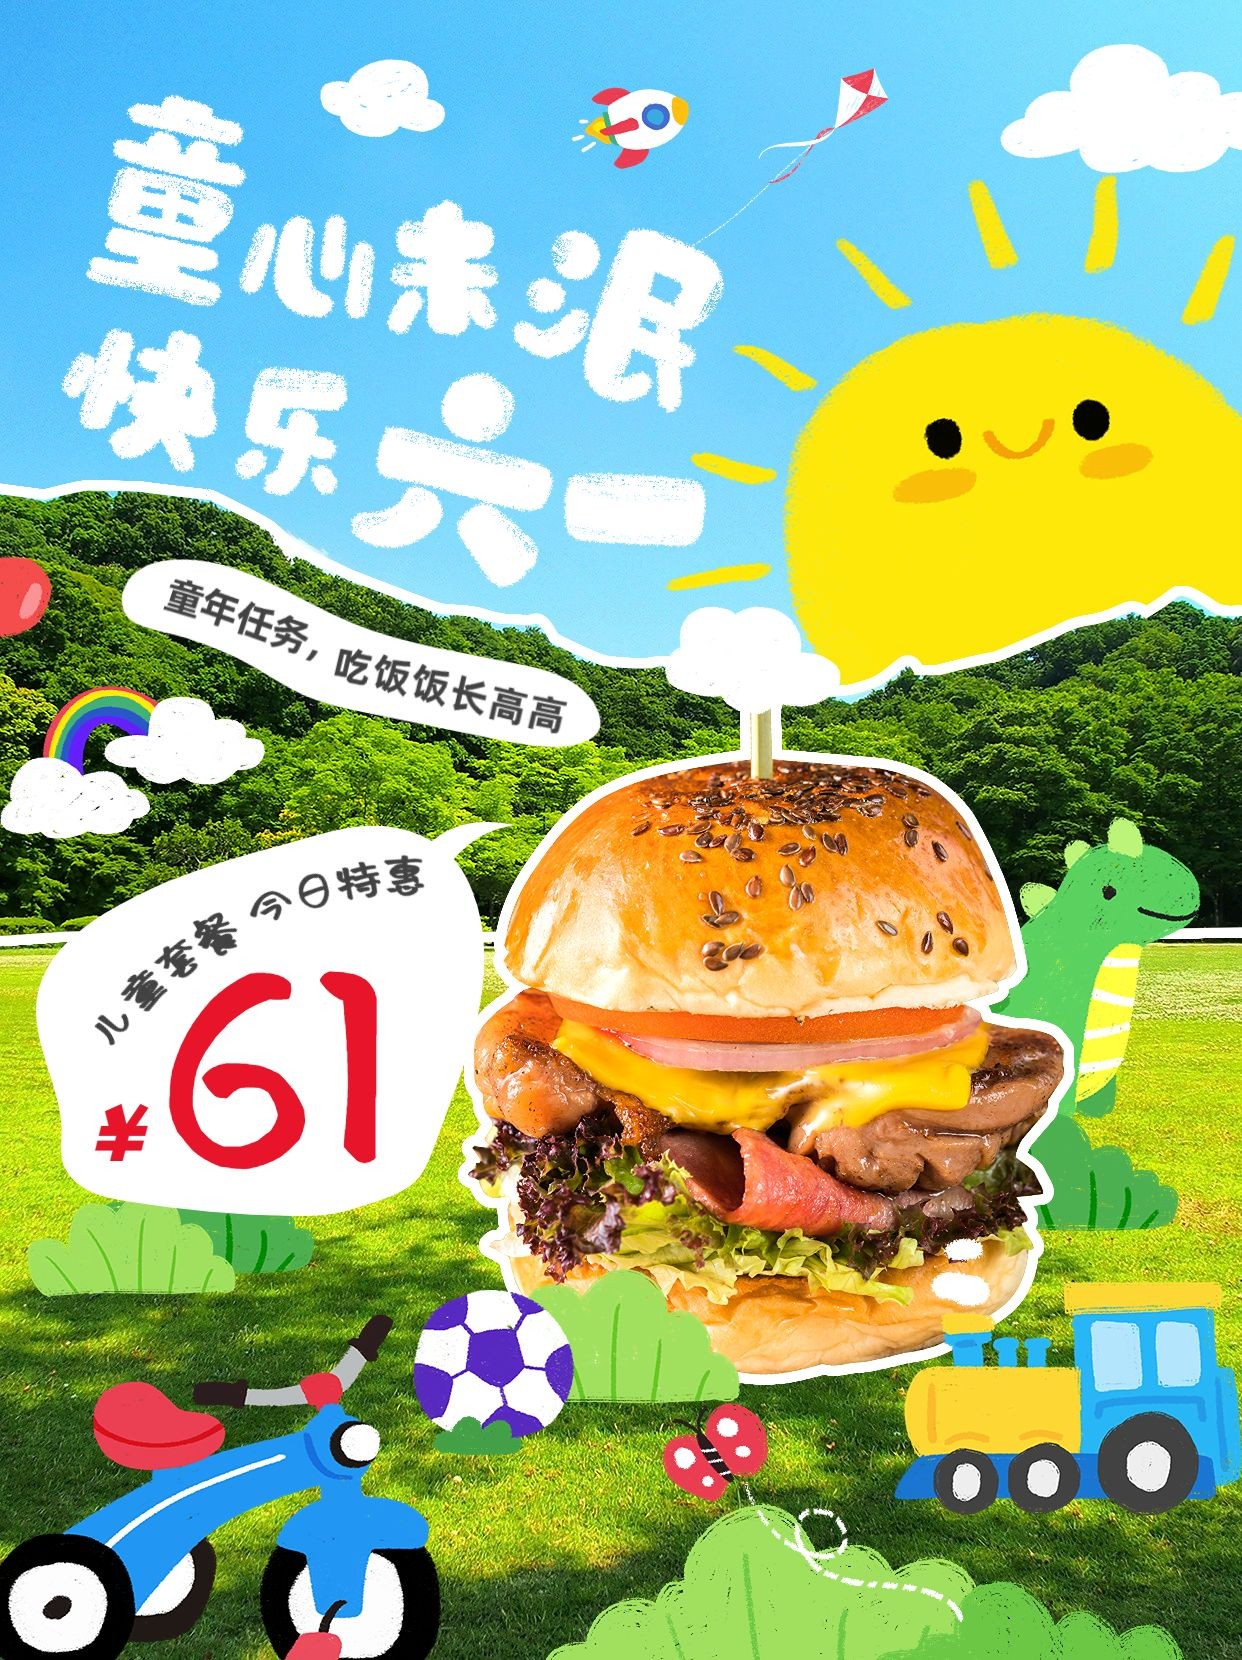 六一儿童节节日祝福美食营销小红书配图预览效果